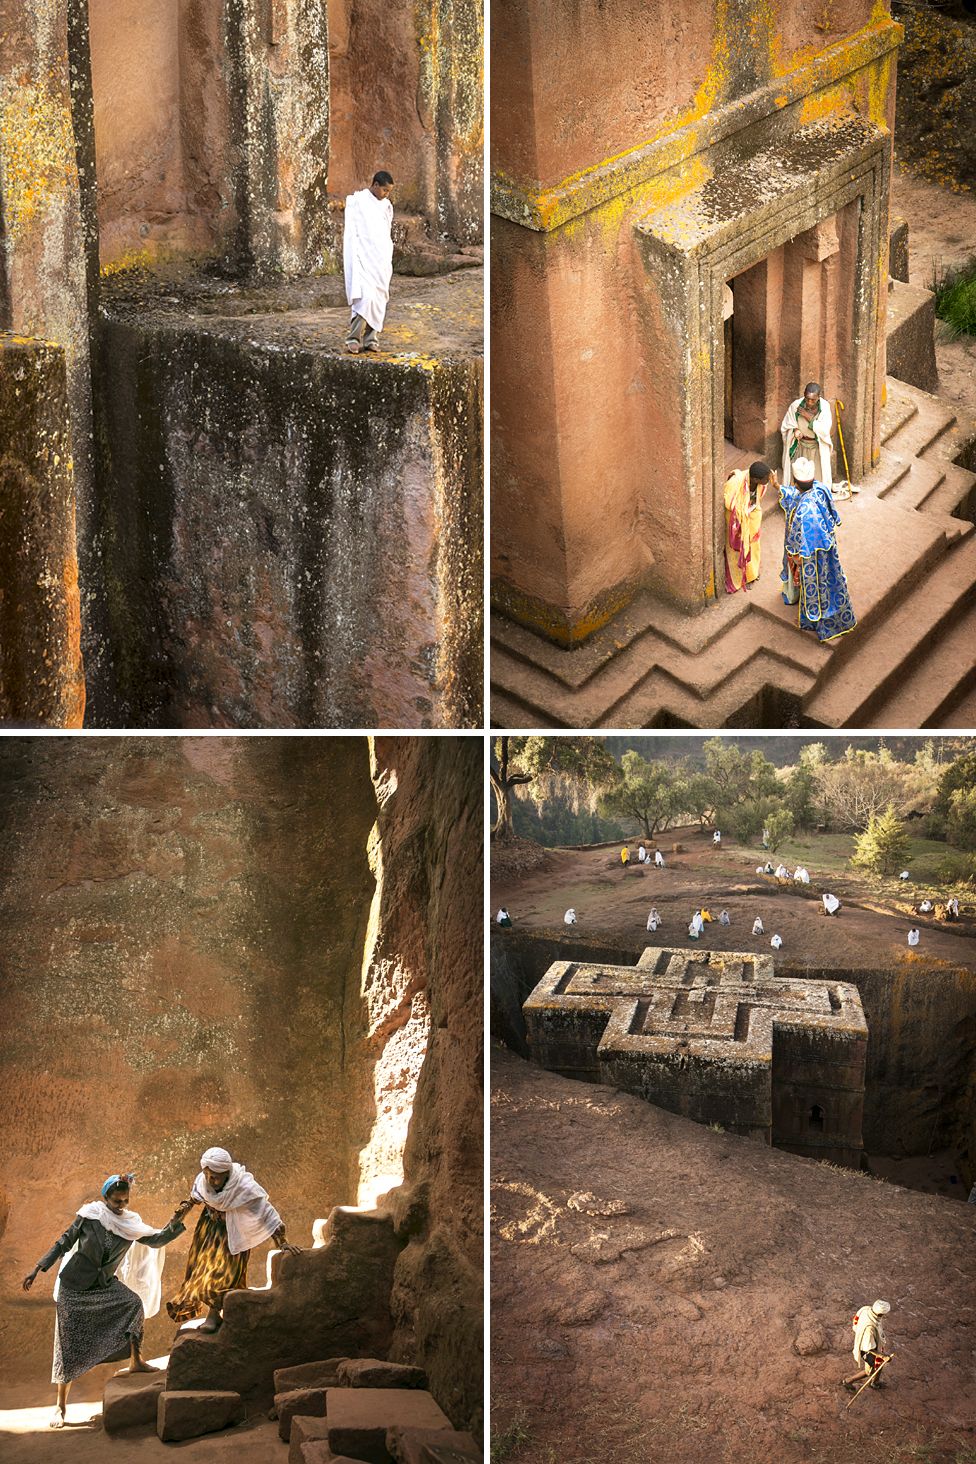 Lalibela, Ethiopia - Philip Lee Harvey/www.tpoty.com